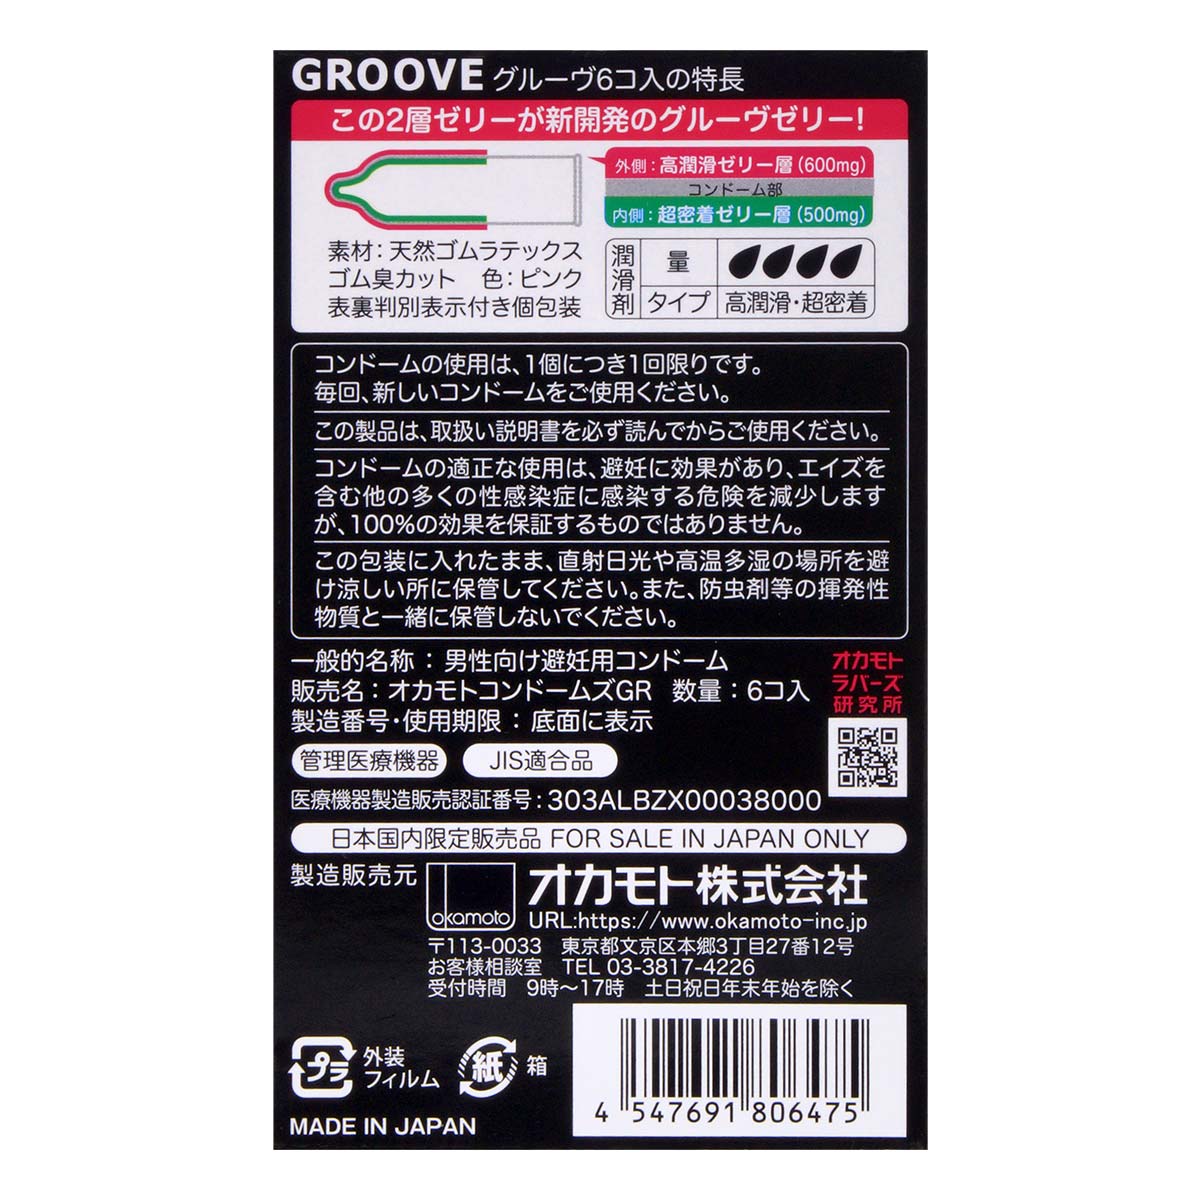 冈本 GROOVE 双层润滑剂 (日本版) 6 片 乳胶安全套-p_3